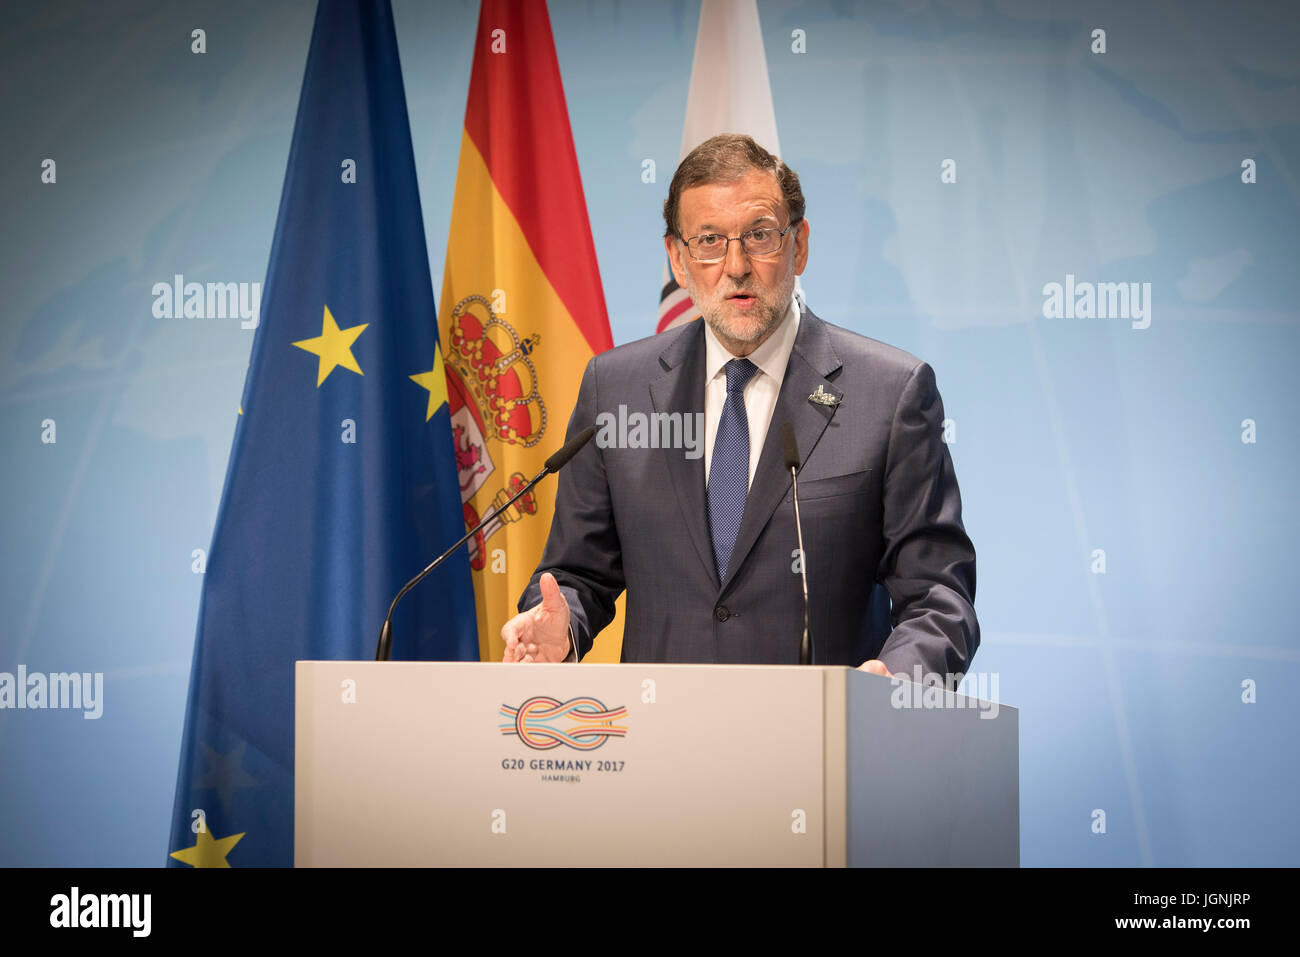 Le Président Espagnol Mariano Rajoy lors d'une conférence de presse à l'issue des deux jours de réunion au sommet du G20 des dirigeants du monde le 8 juillet 2017 à Hambourg, Allemagne. (Bundesregierung/Bergmann via Planetpix) Banque D'Images